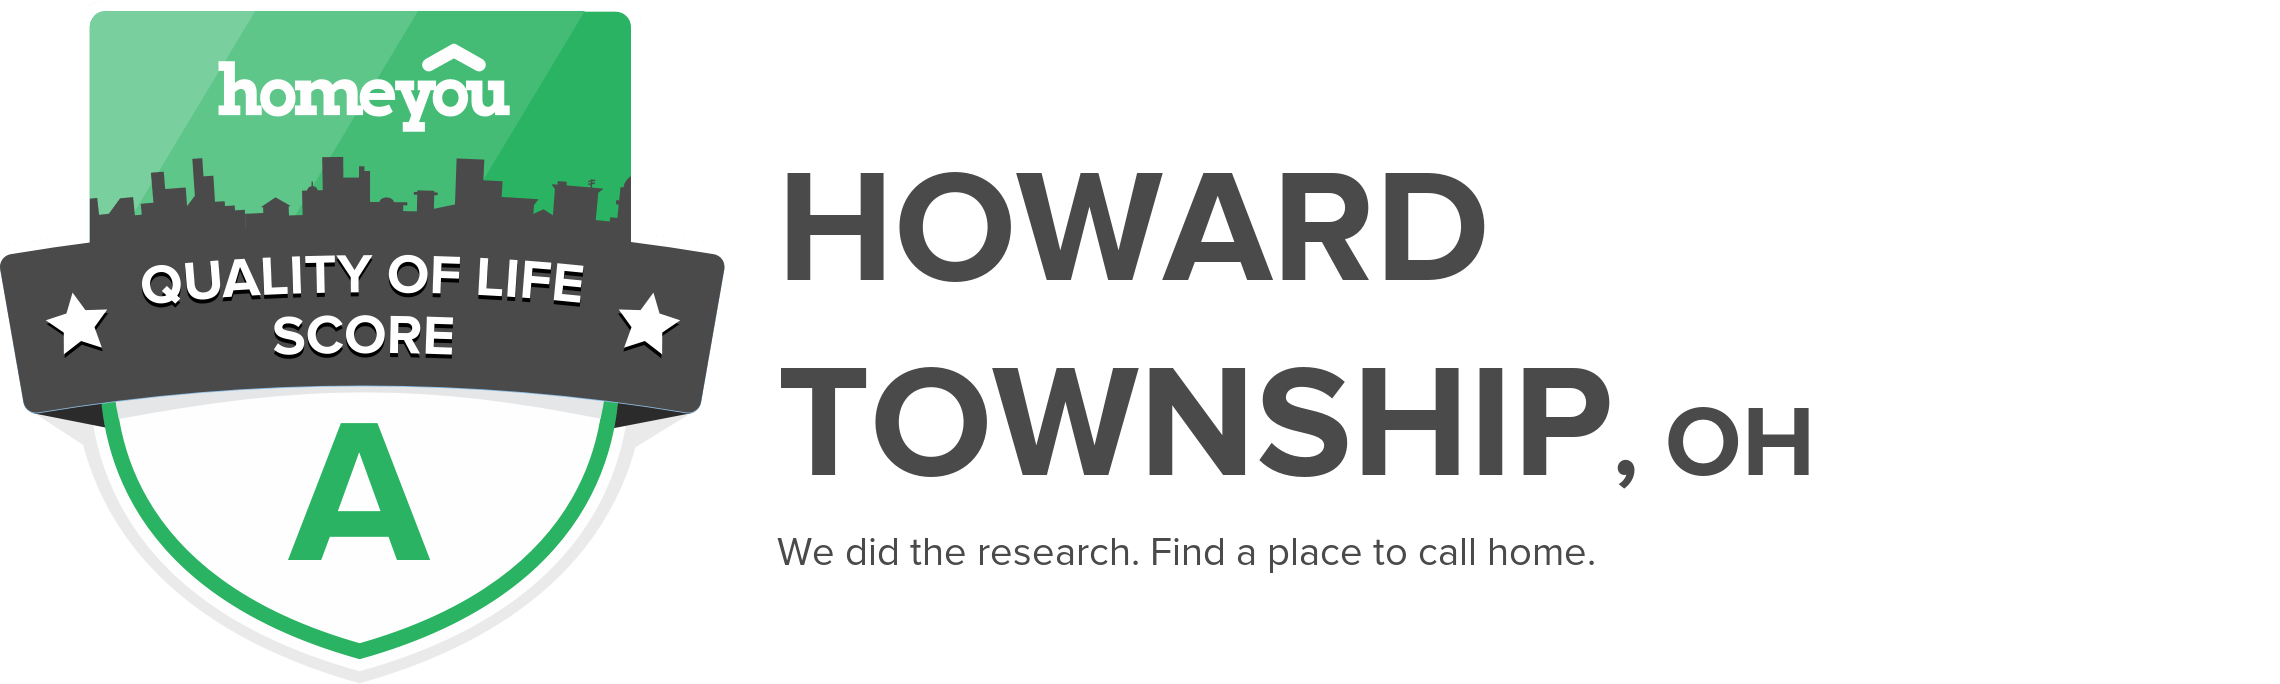 Howard township, OH